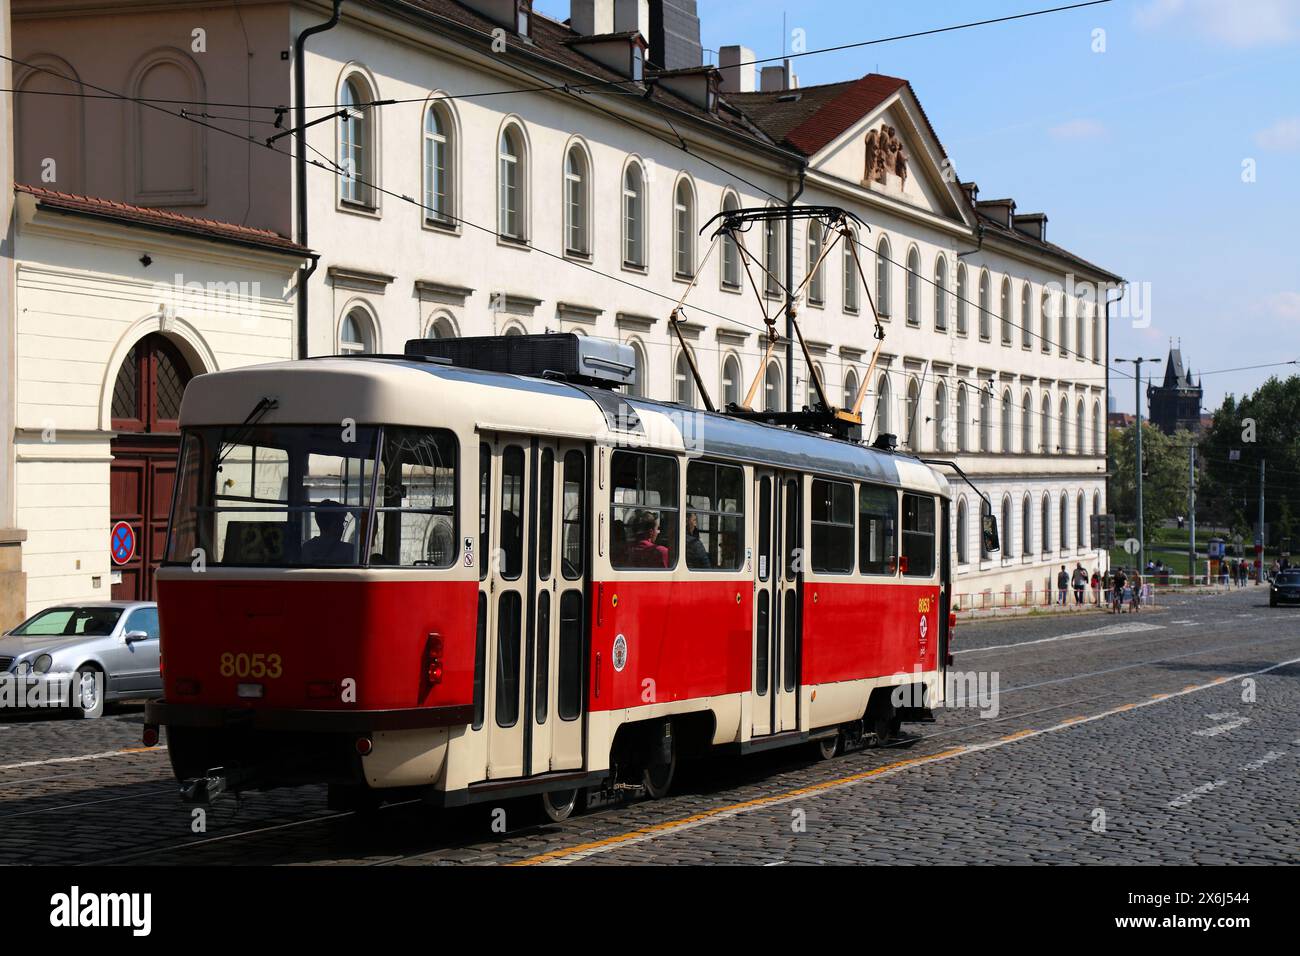 PRAGA, REPUBBLICA CECA - 4 MAGGIO 2024: Classico tram rosso per i trasporti pubblici nel quartiere Mala strana di Praga, Repubblica Ceca. Modello di tram Tatra T3. Foto Stock